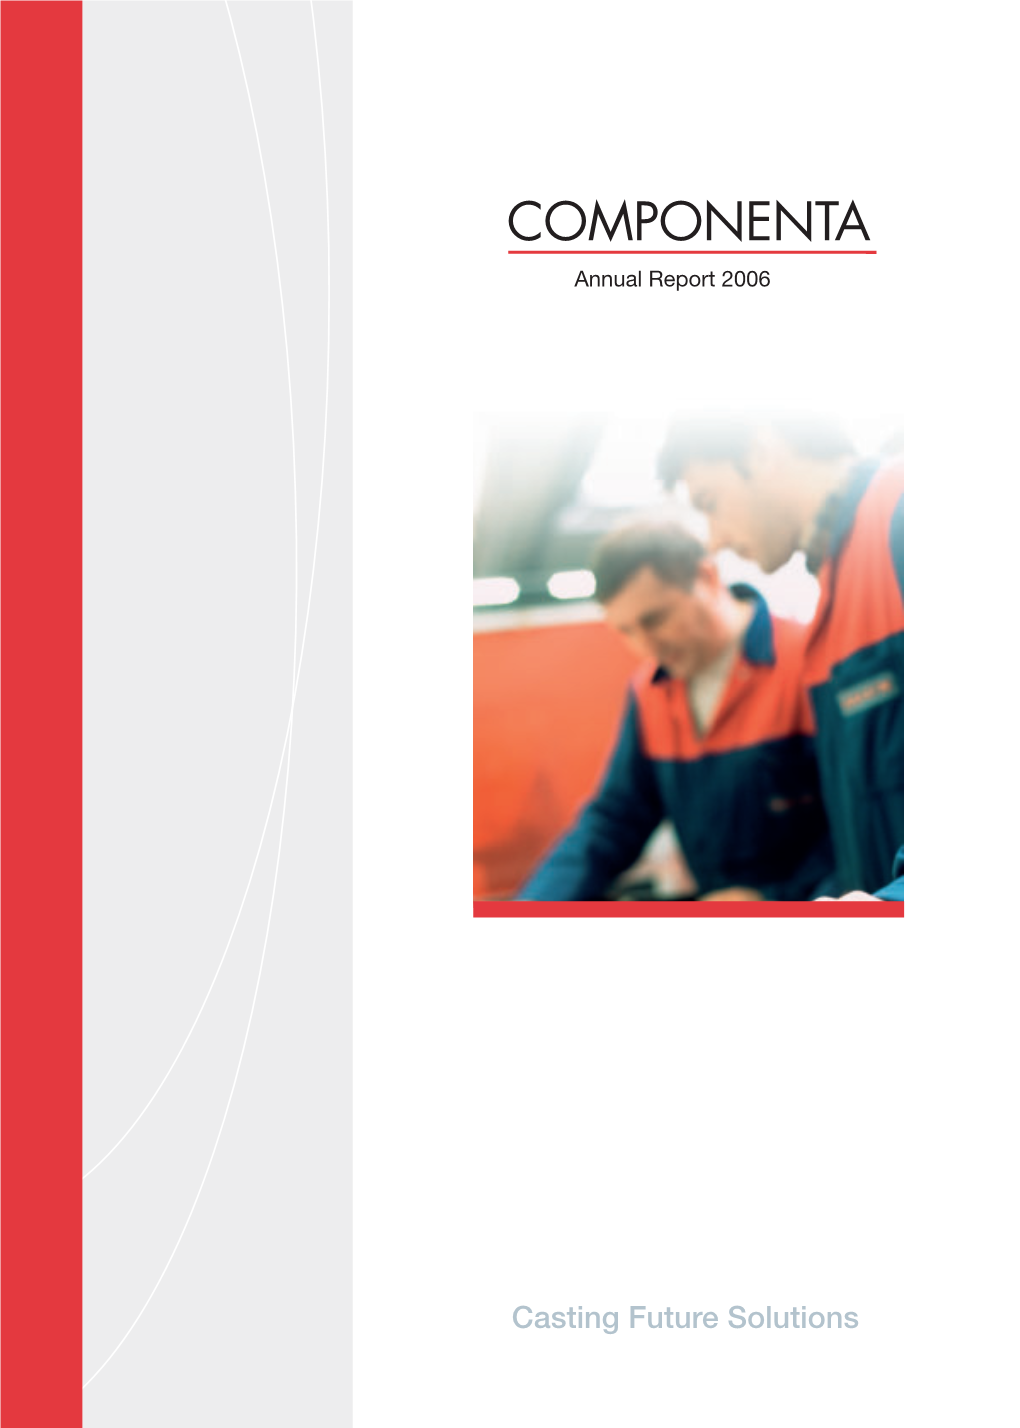 COMPONENTA Annual Report 2006